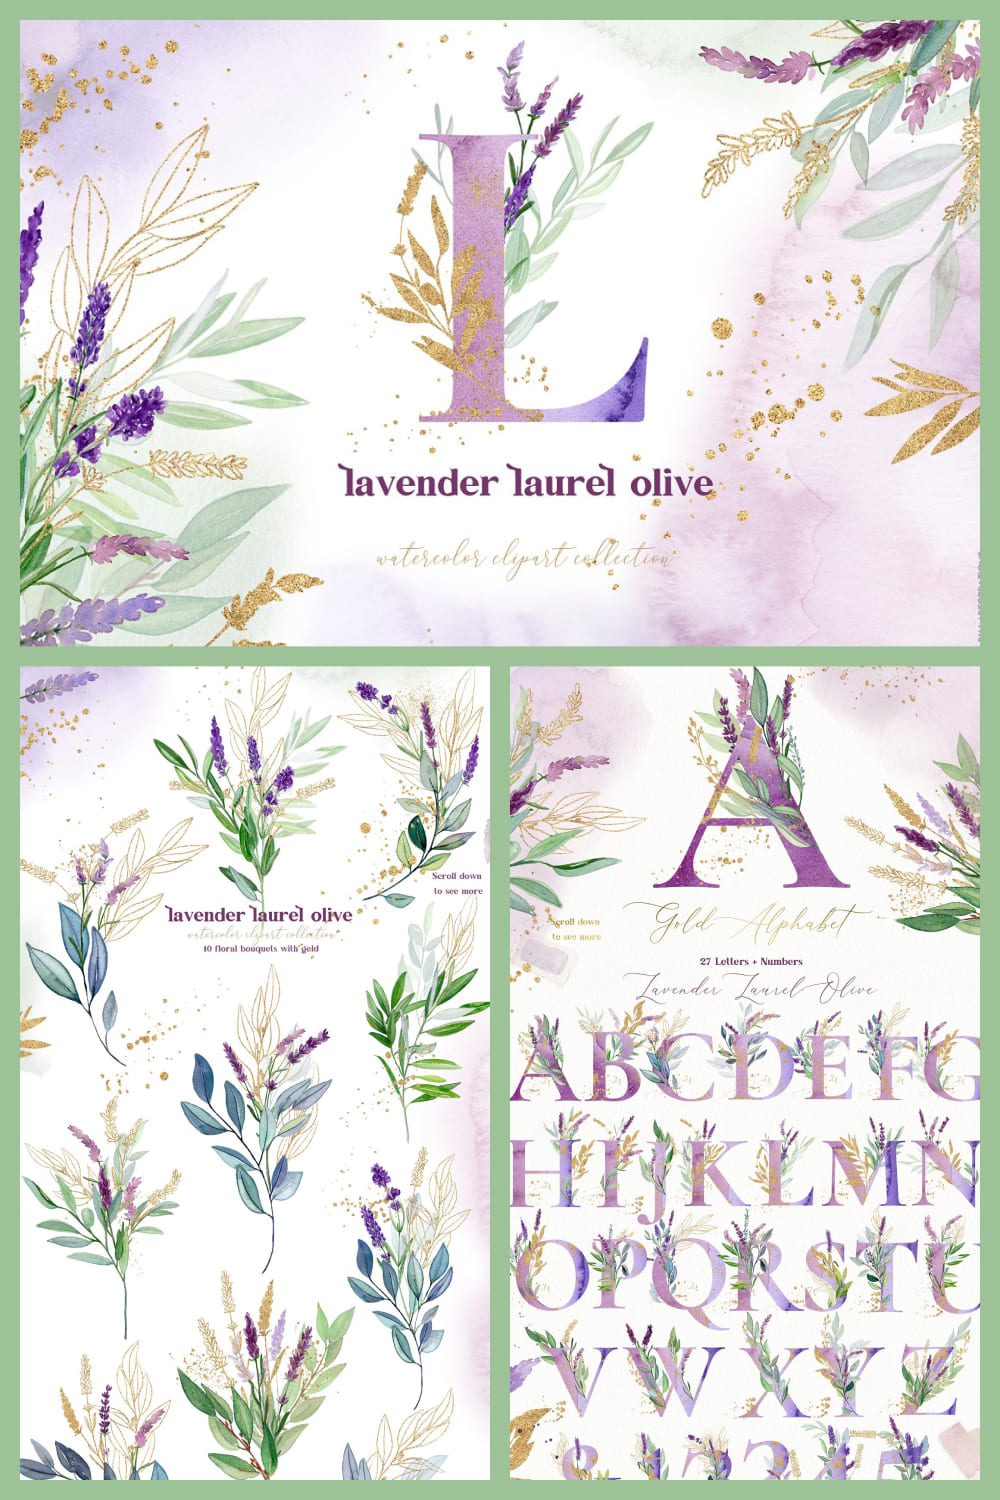 Sale Lavender Laurel Olive Flowers pinterest image.